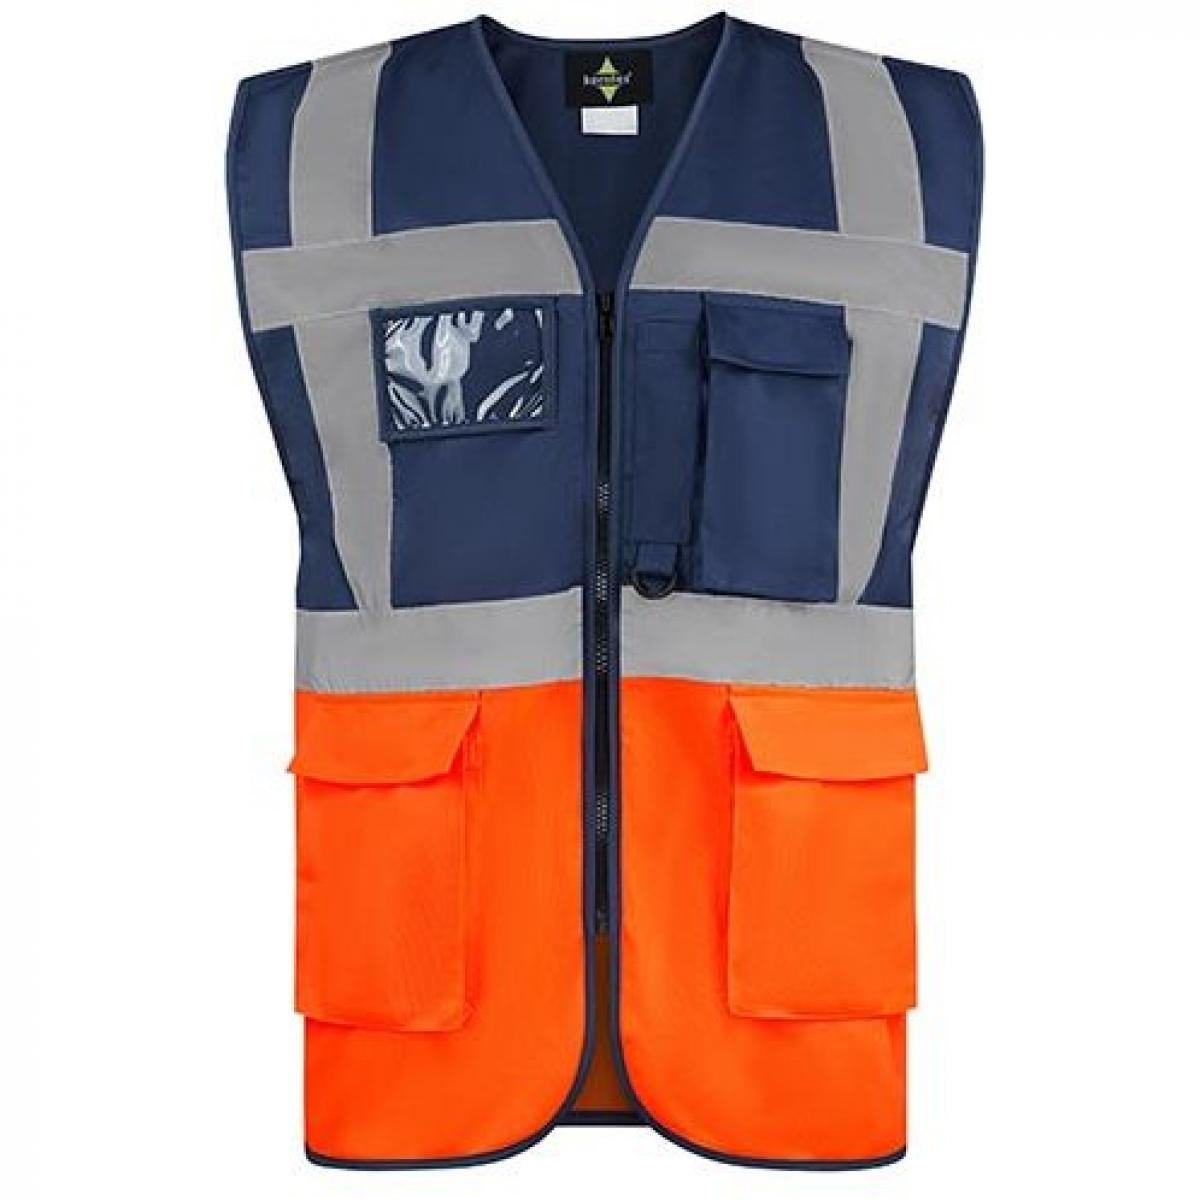 Hersteller: Korntex Herstellernummer: KXCMF Artikelbezeichnung: Comfort Executive Multifunctional Safety Vest Hamburg Farbe: Navy/Orange